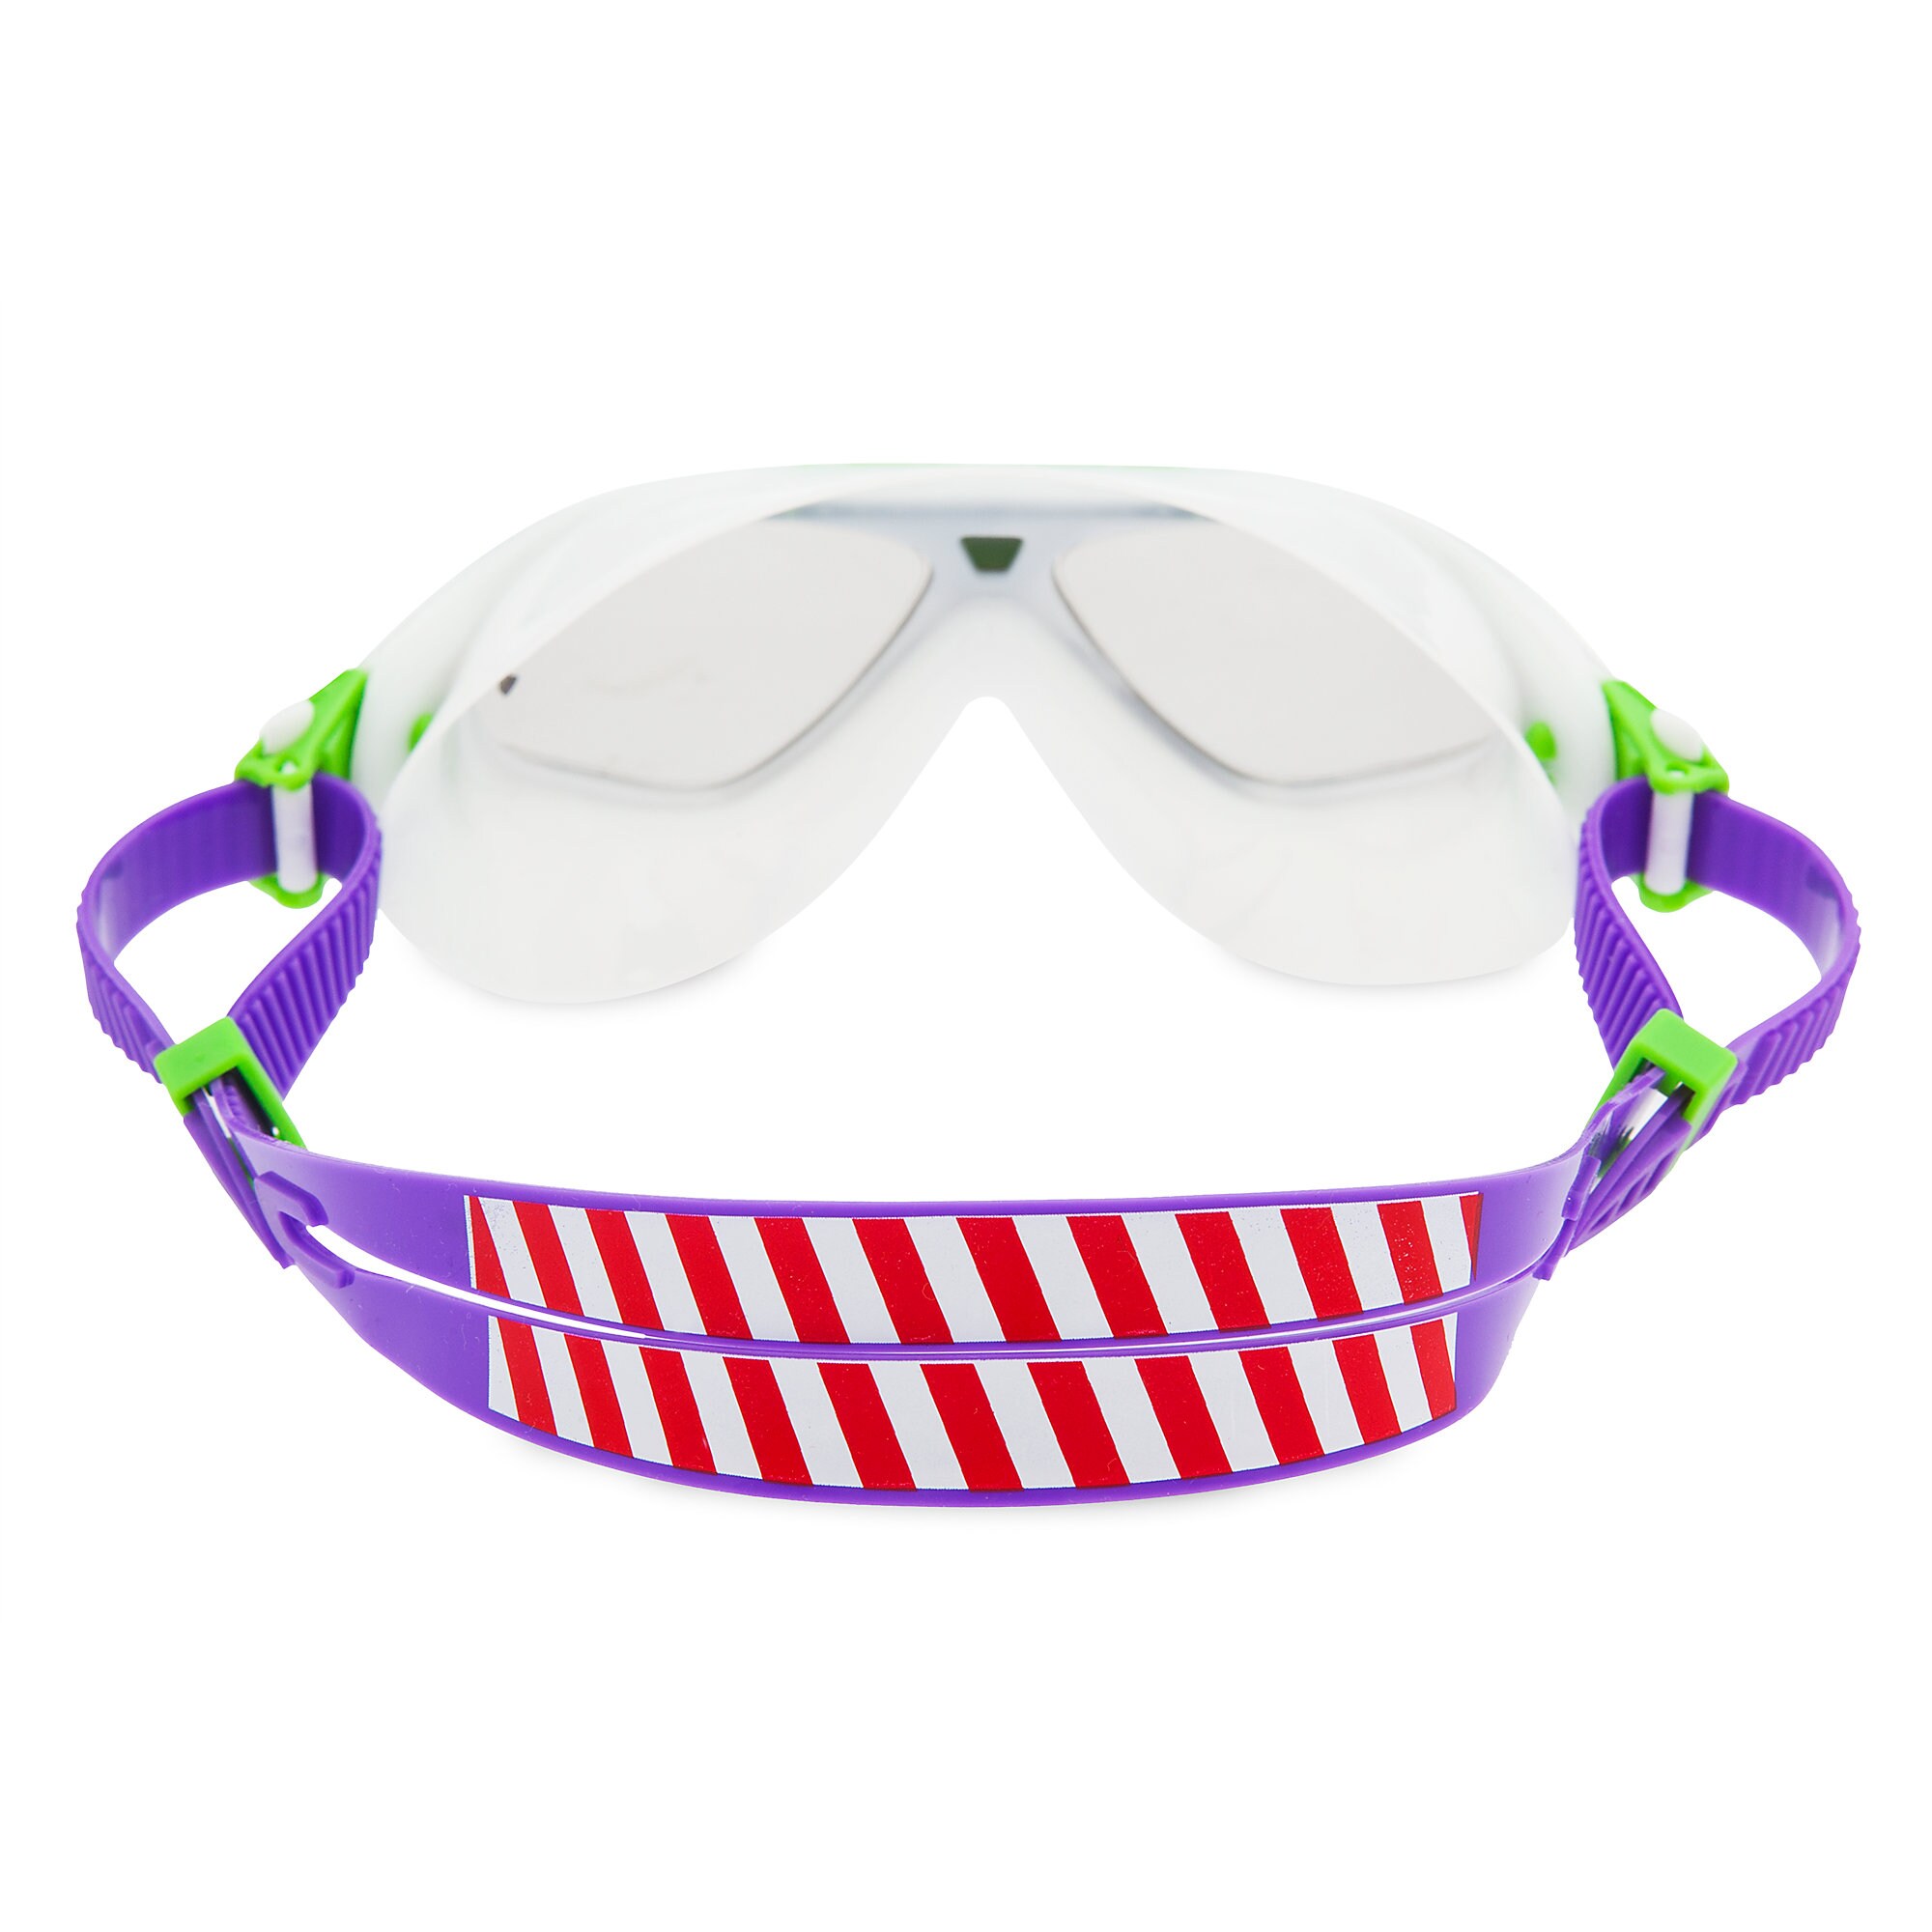 Buzz Lightyear Swim Goggles for Kids